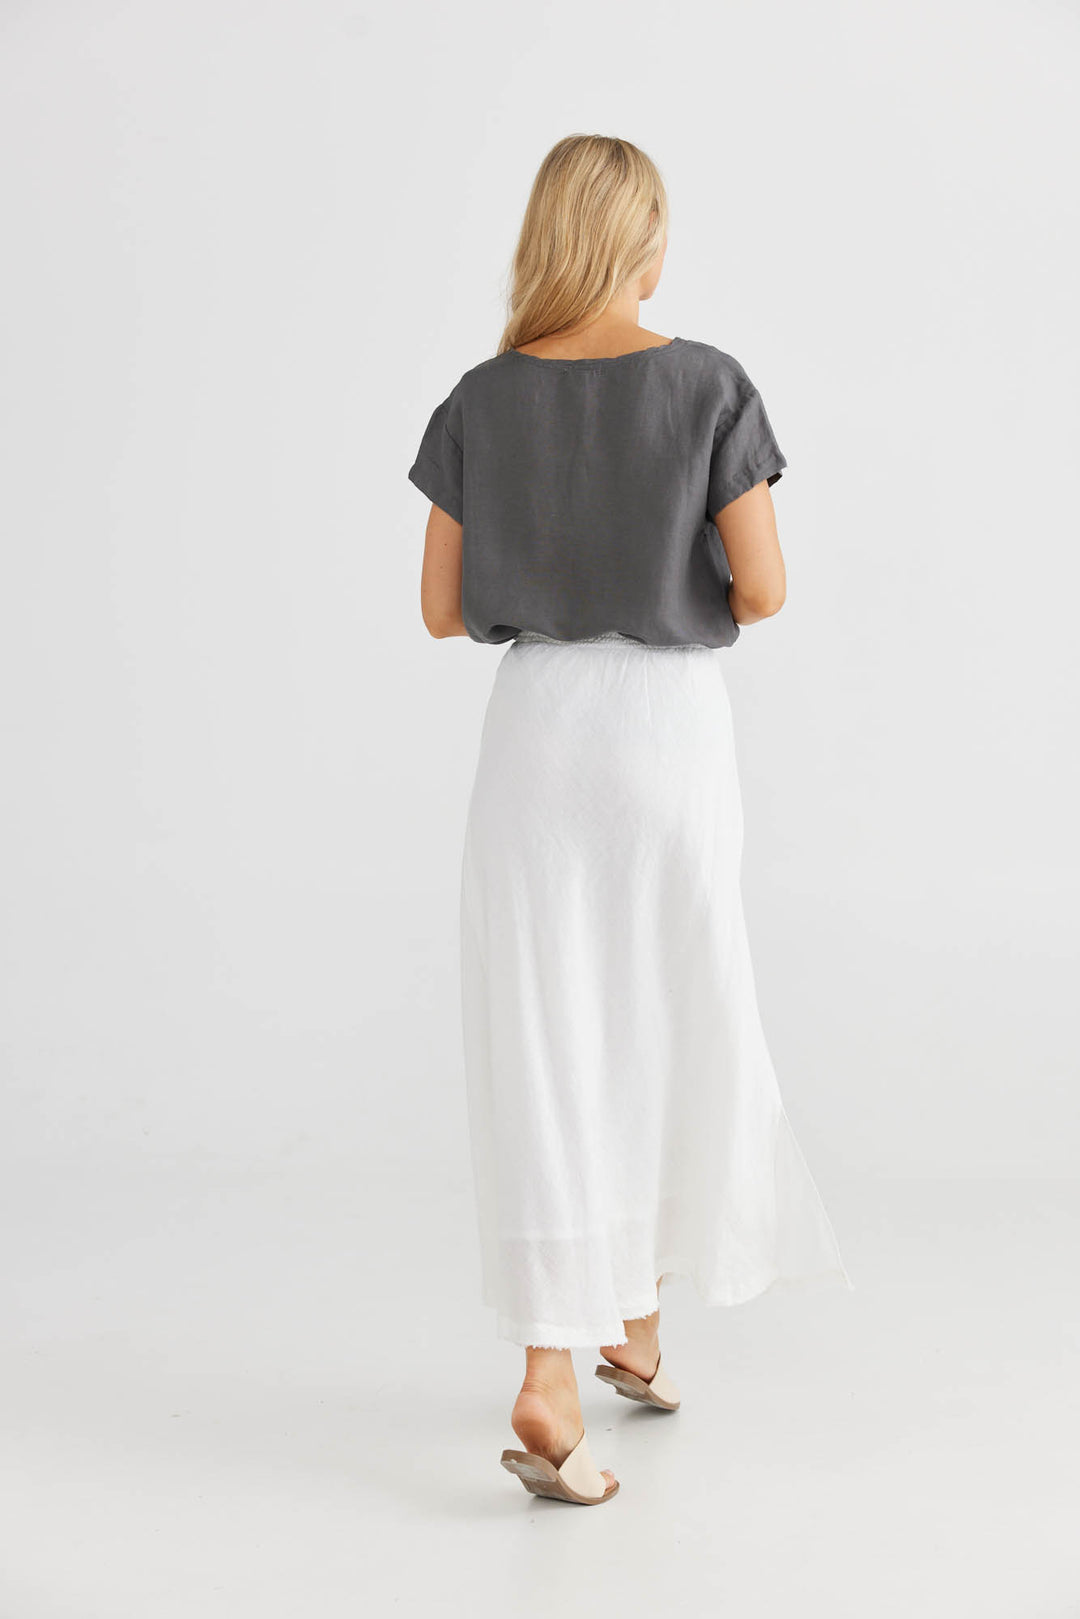 Sicily Skirt - White Linen